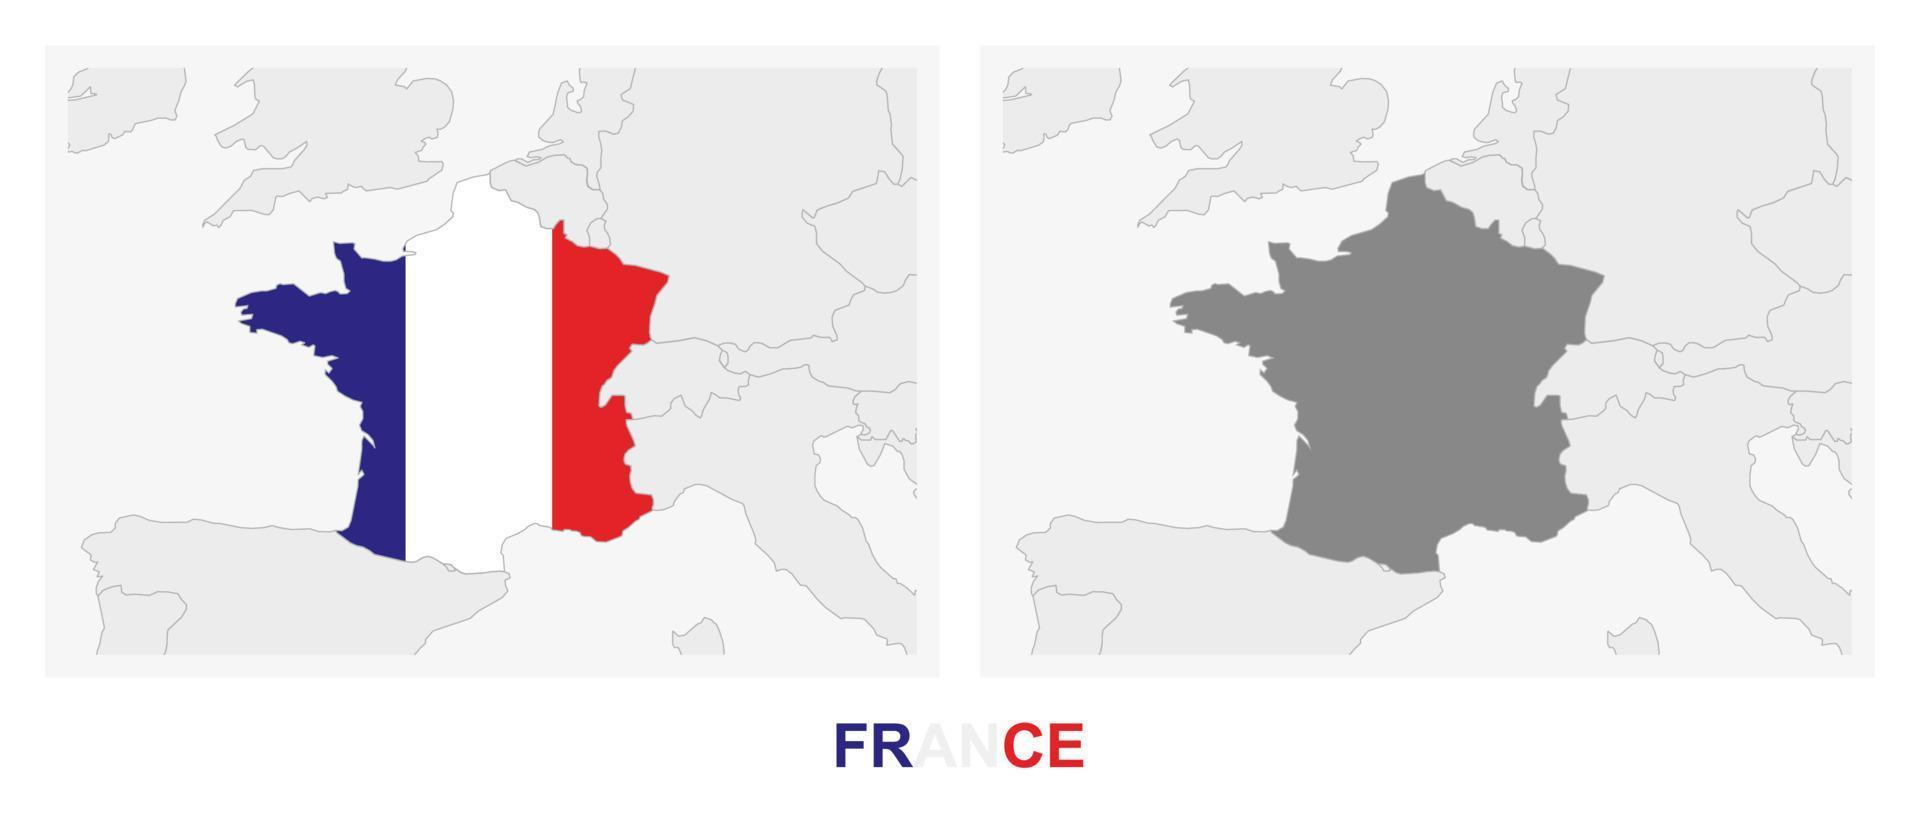 zwei versionen der karte von frankreich, mit der flagge von frankreich und dunkelgrau hervorgehoben. vektor